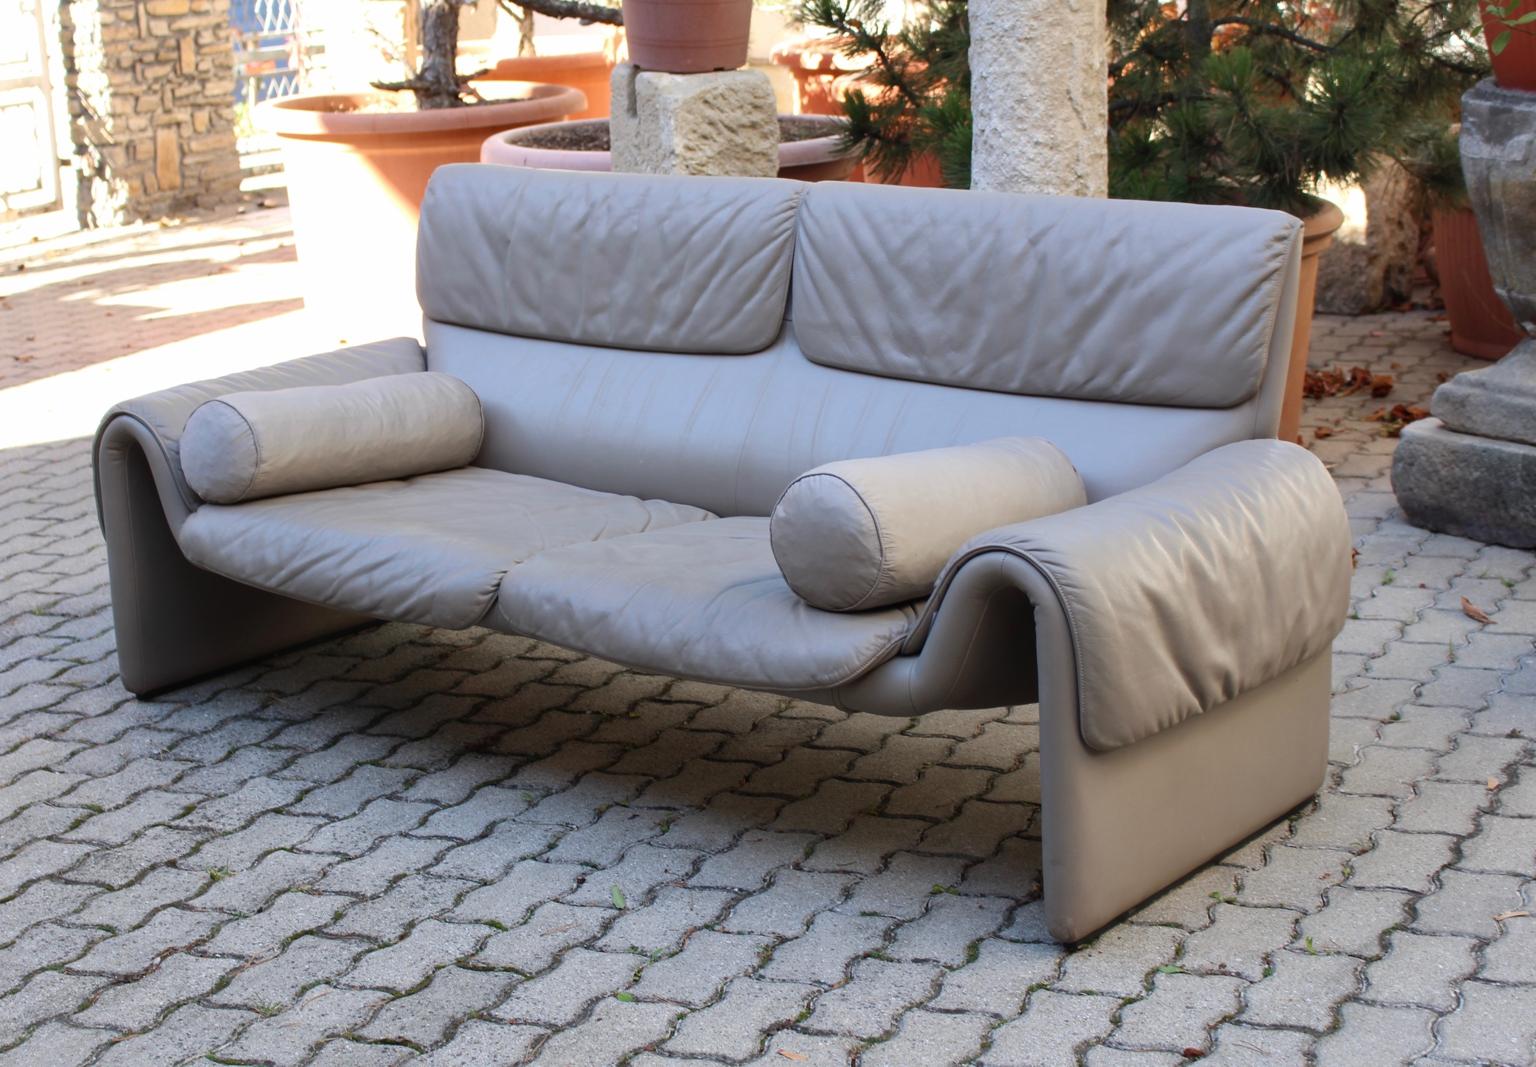 Modernistisches Vintage-Sofa oder Loveseat Modell DS-2011 aus Leder in grauer Farbe von De Sede. 
Ein authentisches, wunderschönes Sofa oder Loveseat mit einer Stahlkonstruktion und hellgrauer Lederpolsterung. Durch die Stahlkonstruktion ist das